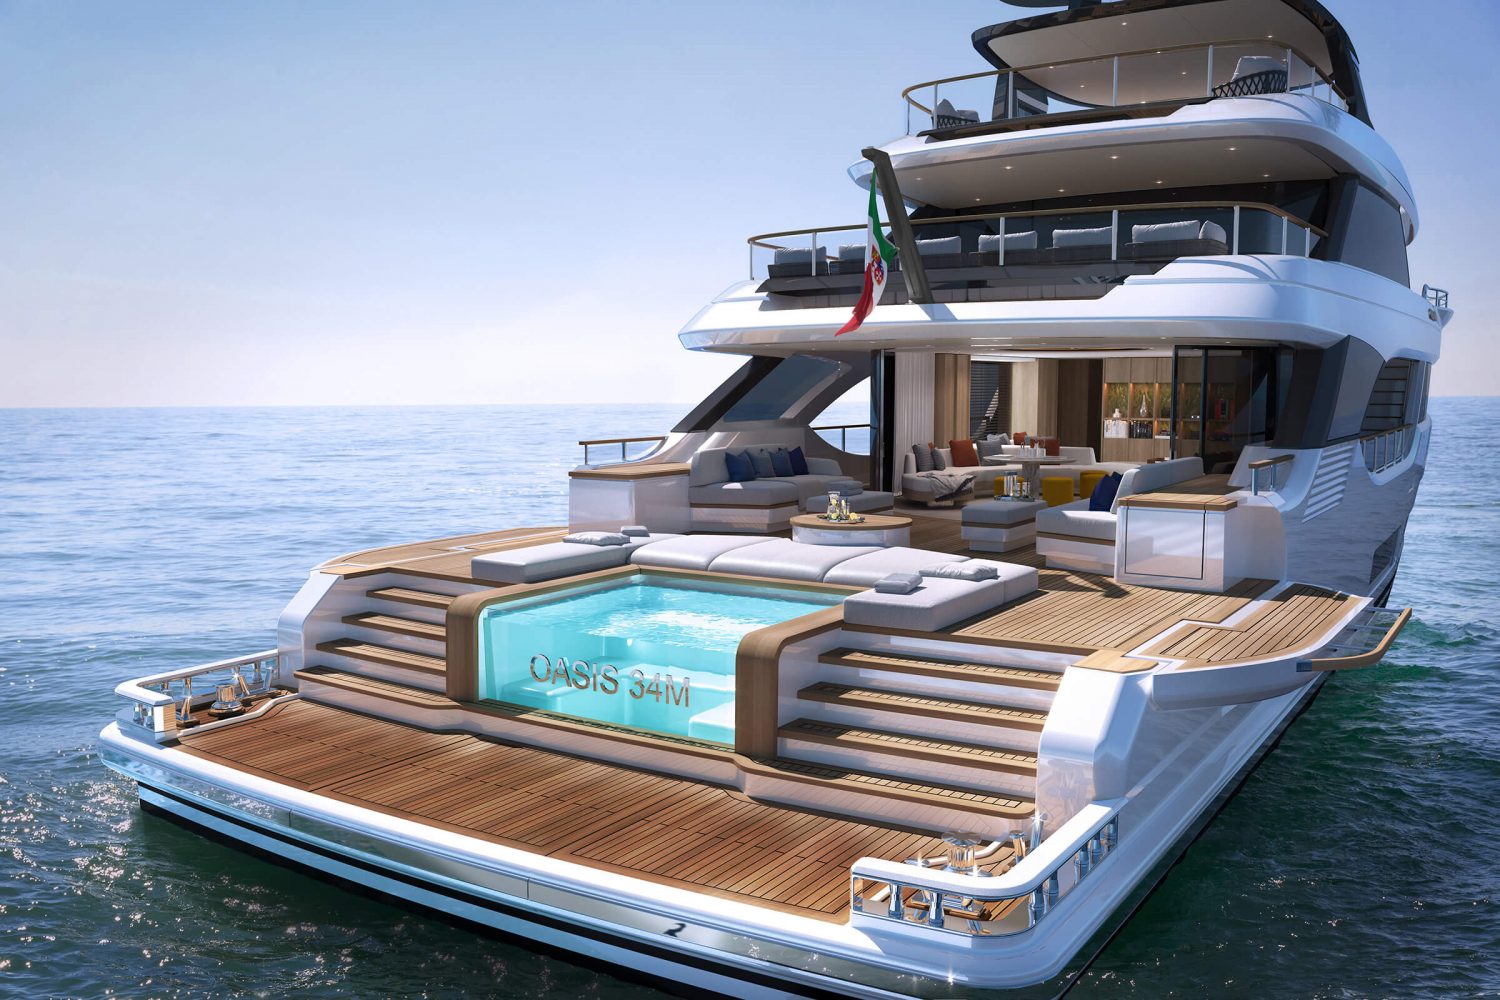 benetti yacht oasis 34